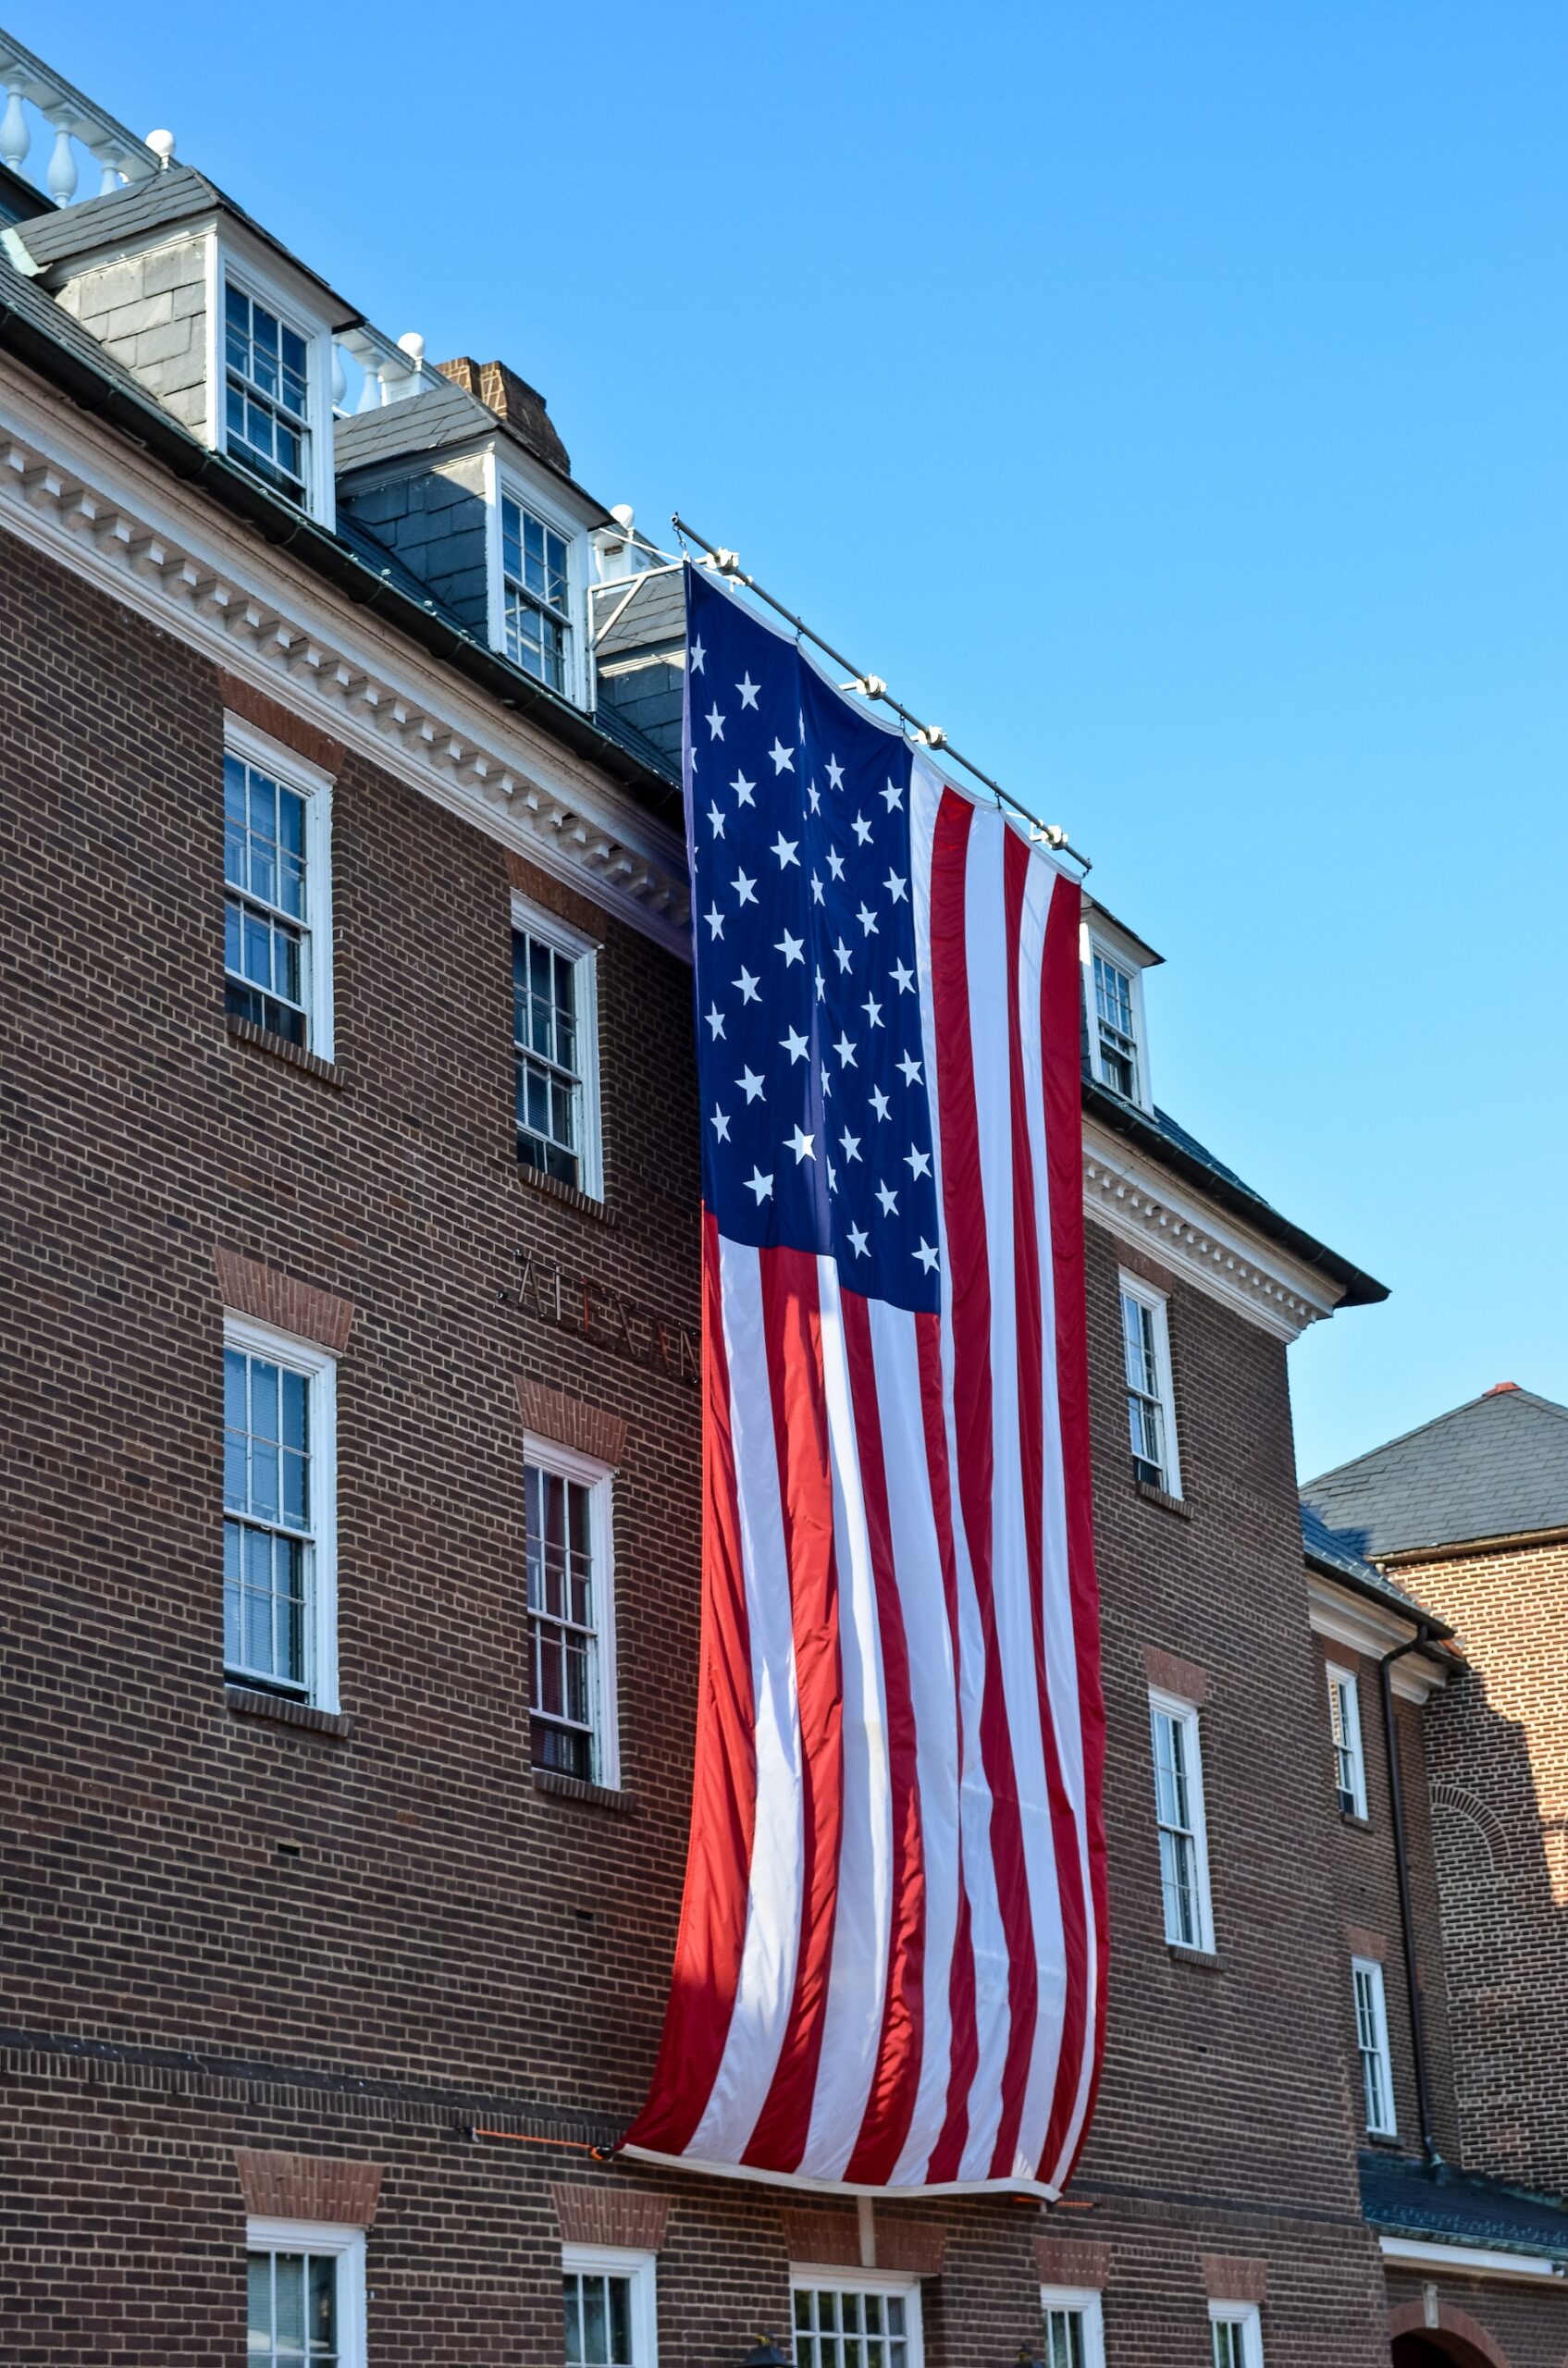 American flag on a building Arlington, Virginia.